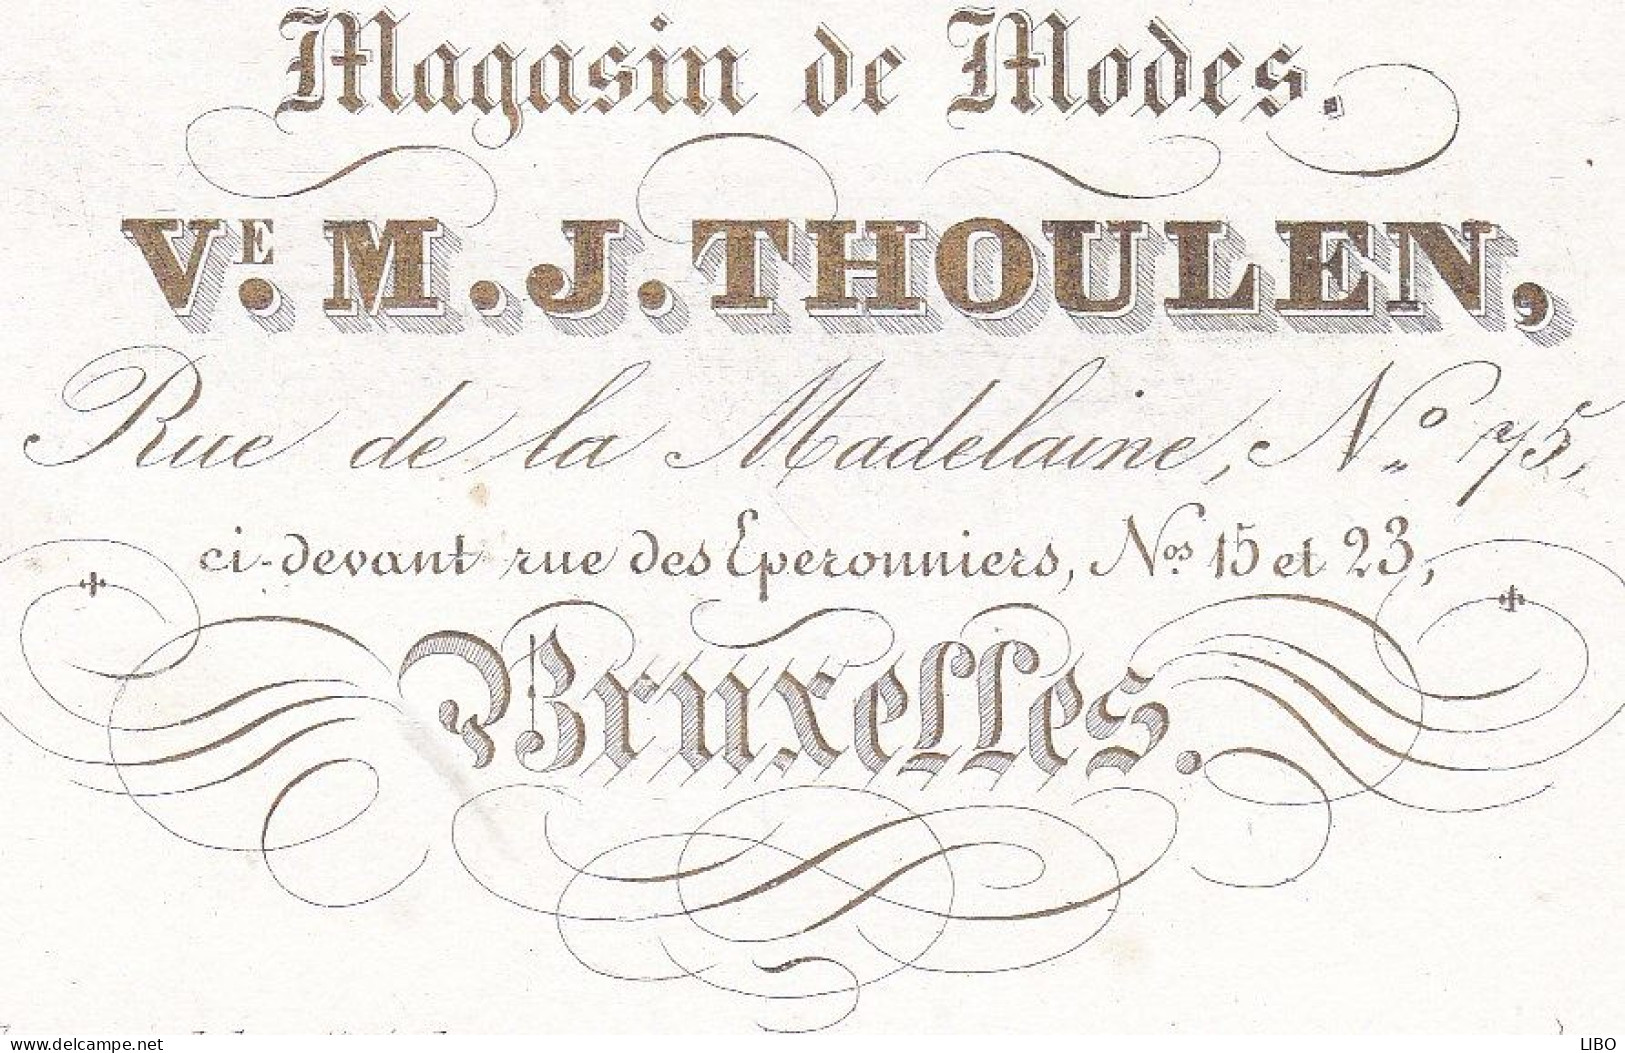 BRUXELLES Magasin De Modes V. THOULEN Rue De La Madeleine 75 Carte De Visite Porcelaine C. 1860 - Visitenkarten